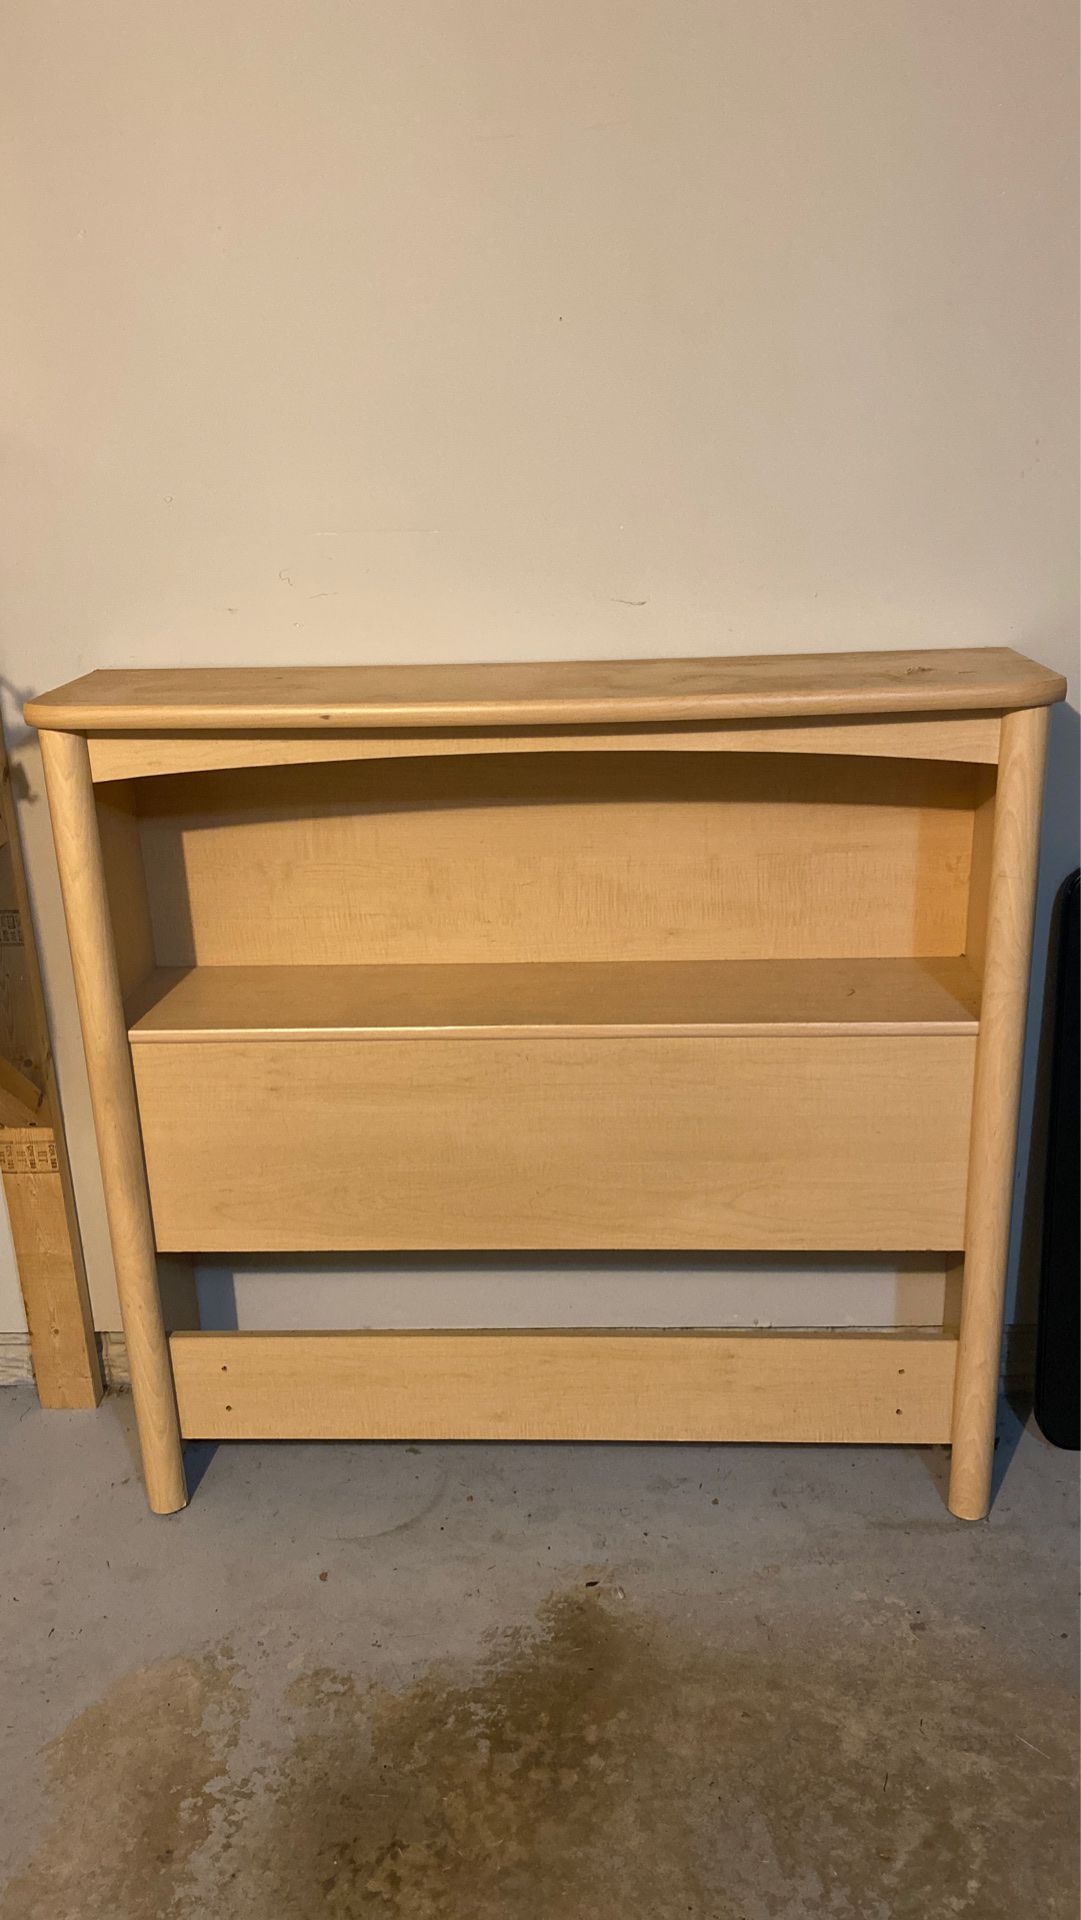 Palliser shelf/headboard for Twin Sized Bed